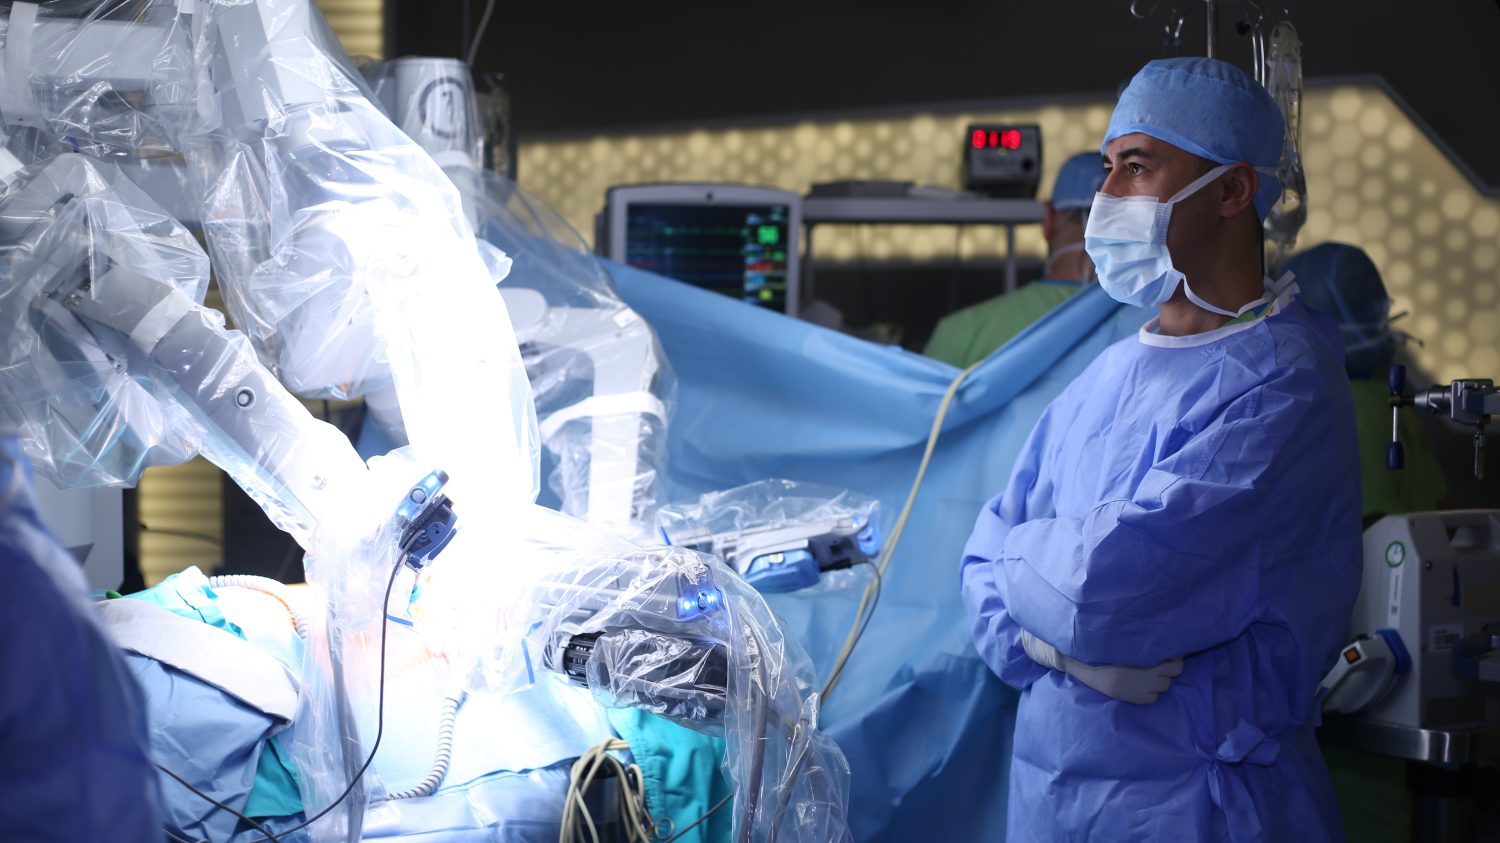 Intervento chirurgico da Vinci.  Chirurgia Robotica Mininvasiva con il Sistema Chirurgico da Vinci.  Robot medico.  Chirurgia robotica.  Operazione medica che coinvolge il robot.